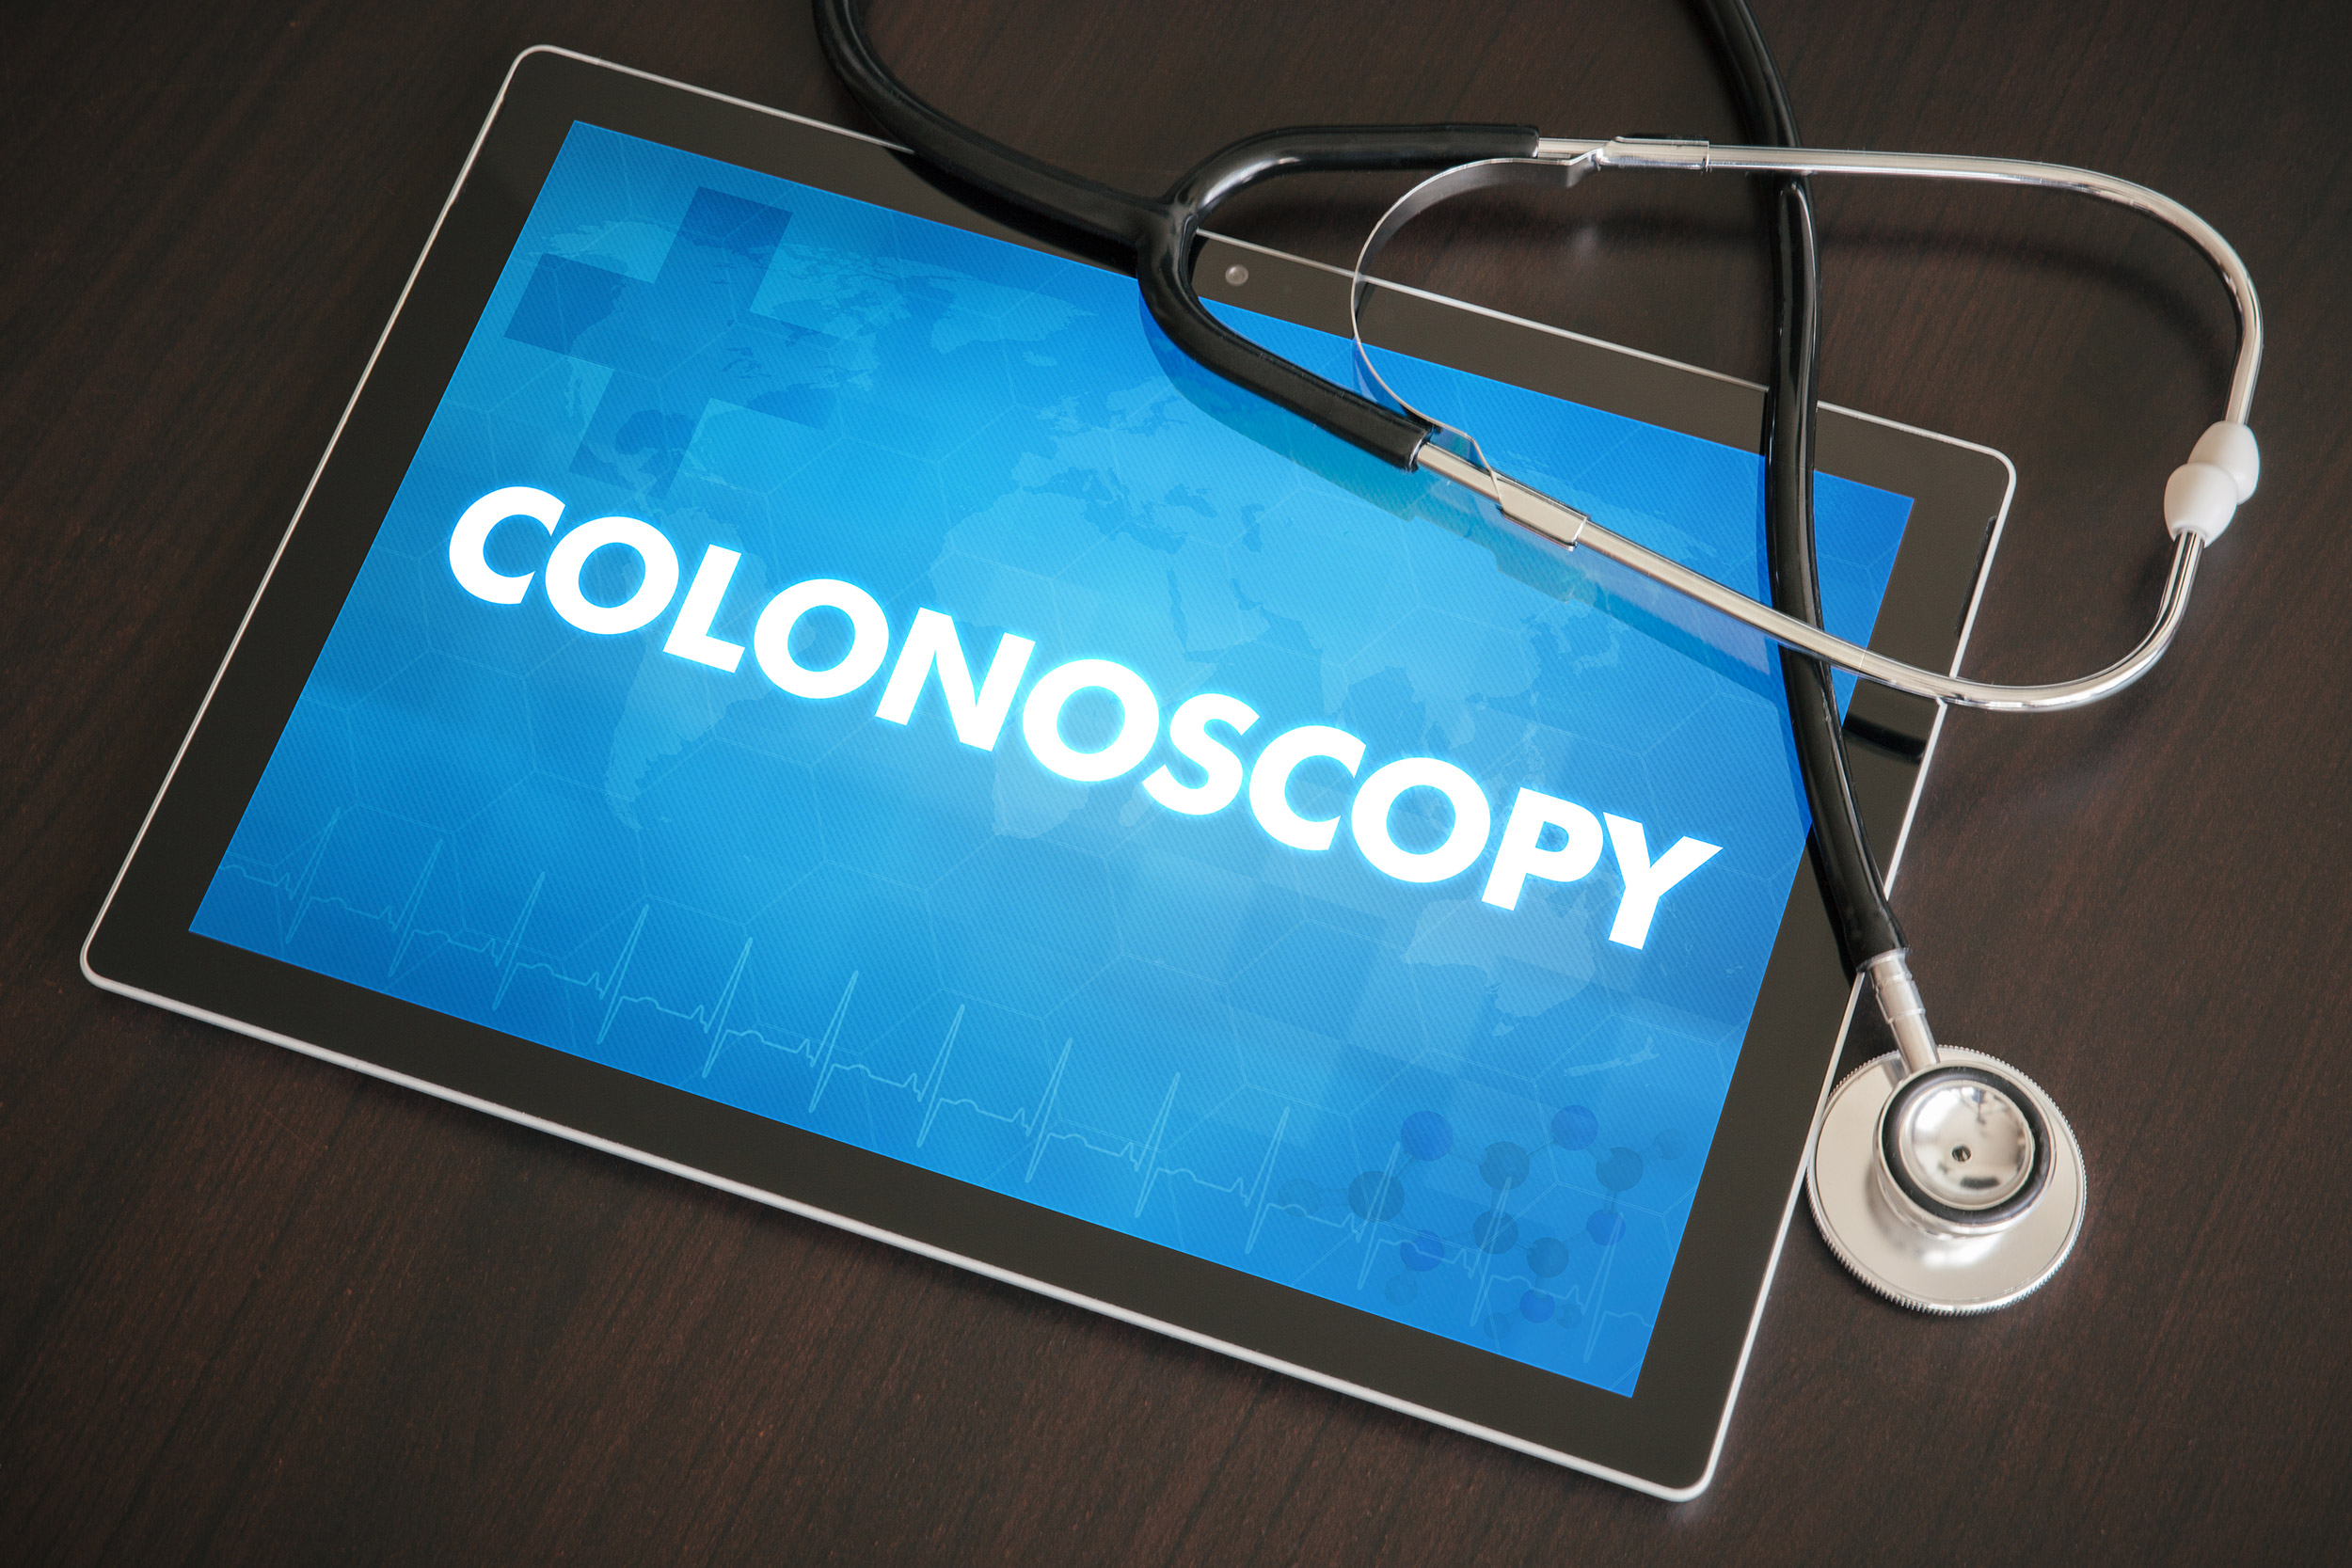 colonoscopy on tablet